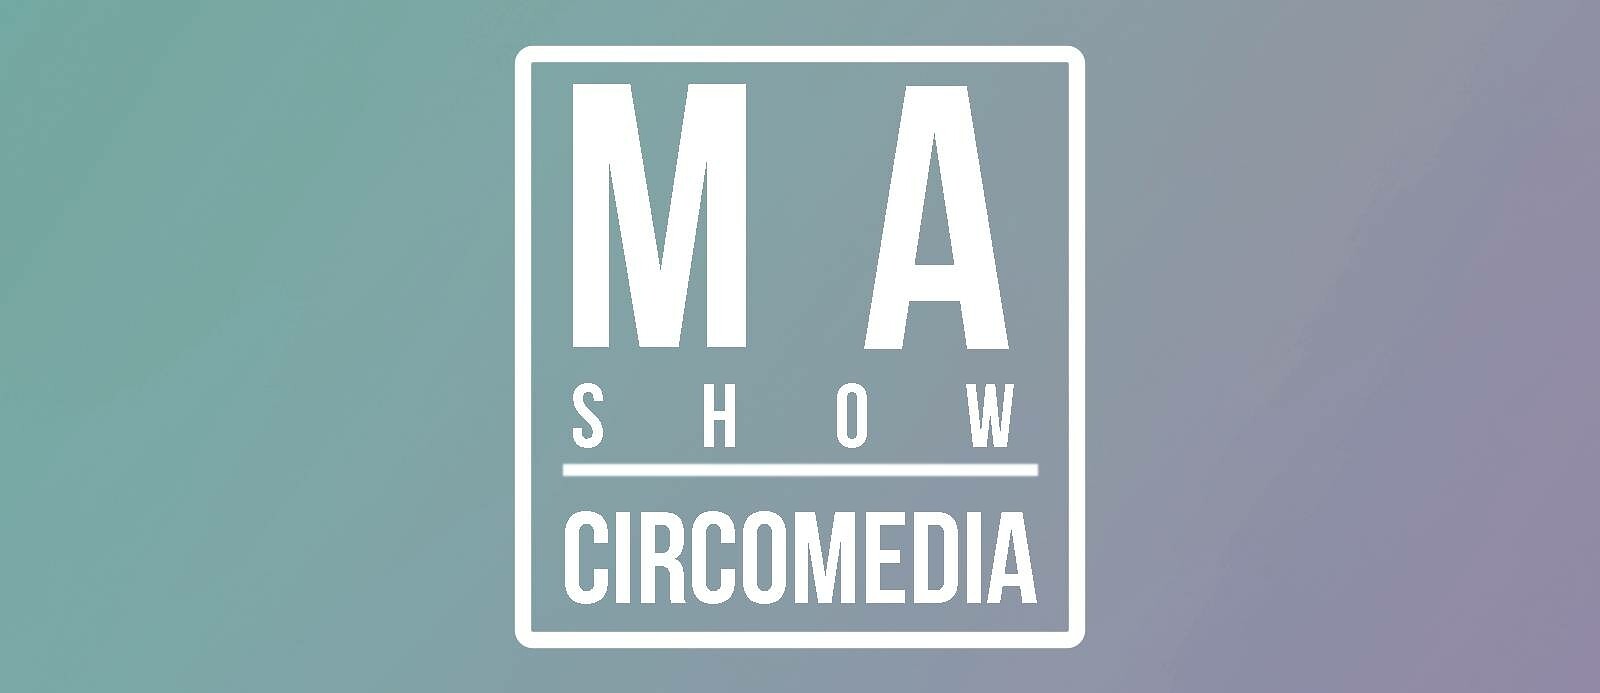 MADC-CIRCO-MEDIA: at Circomedia